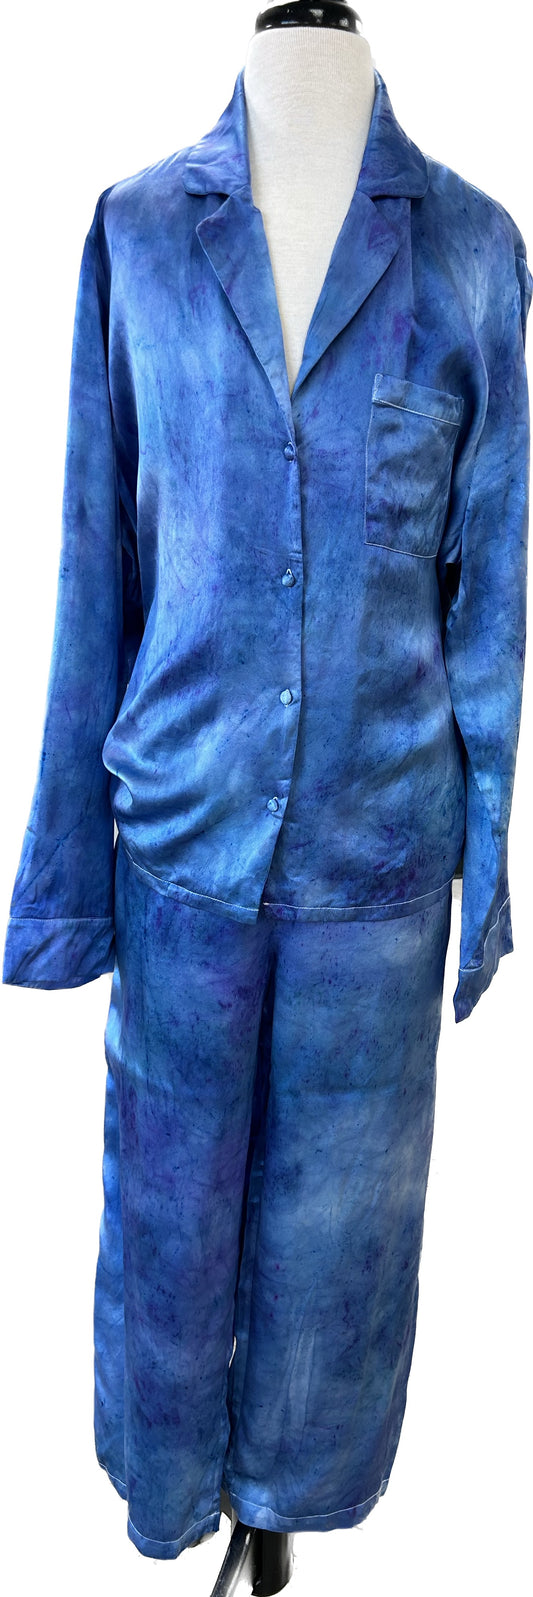 100% Silk Pajamas- "Blue/Purple Speckled"